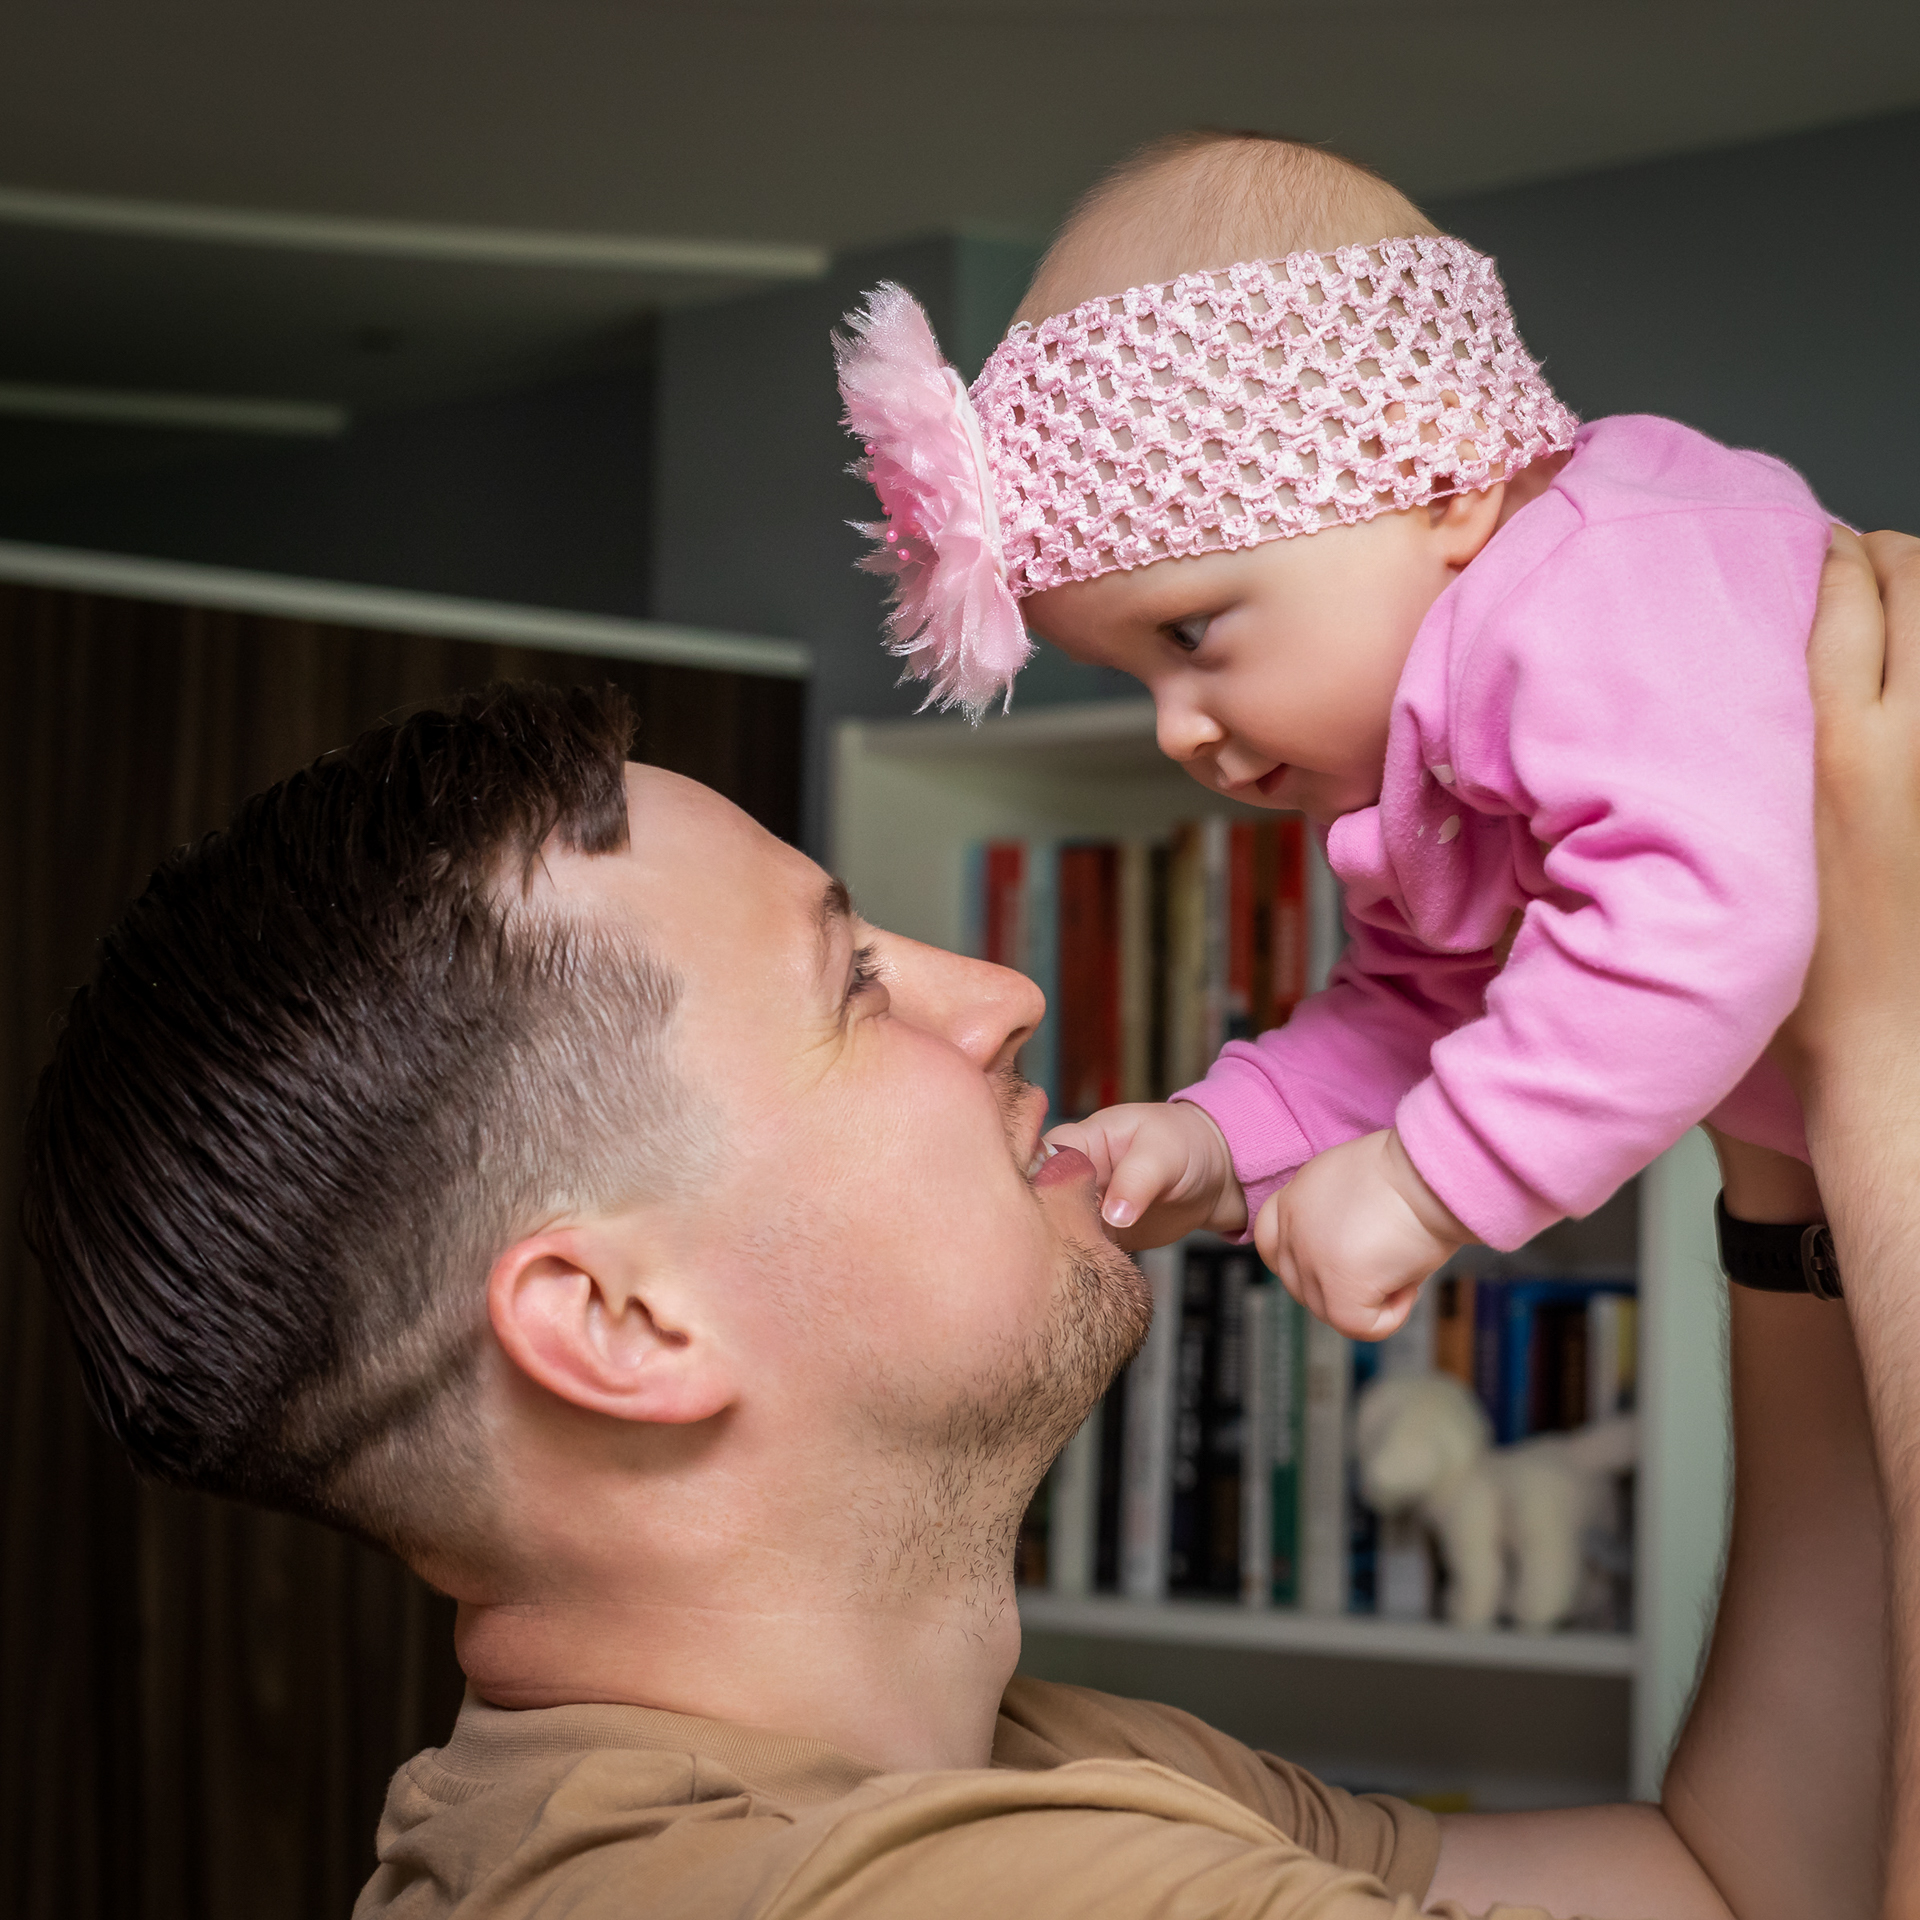 Tėtis virš galvos iškėlęs 6 mėnesių dukrytę, žiūri vienas kitam į akis